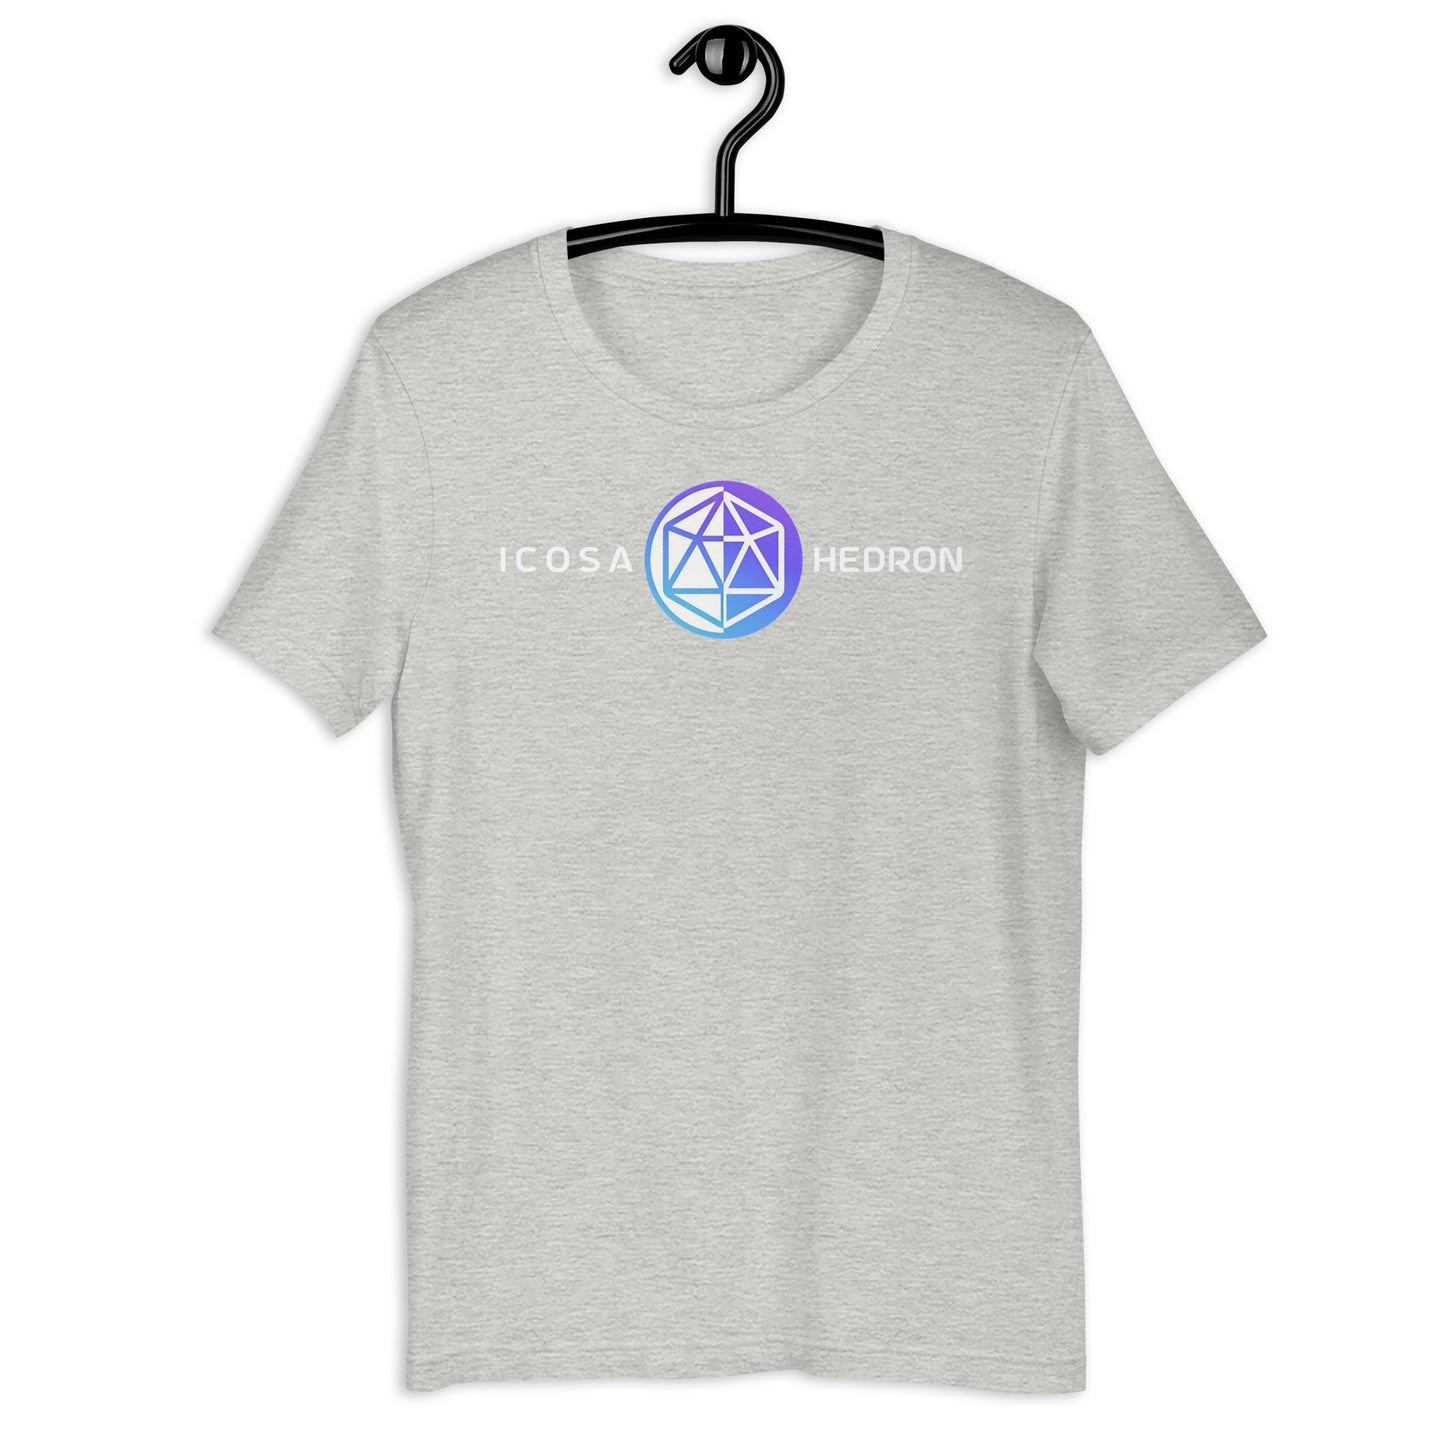 Hedron / Icosa Unisex T-Shirt